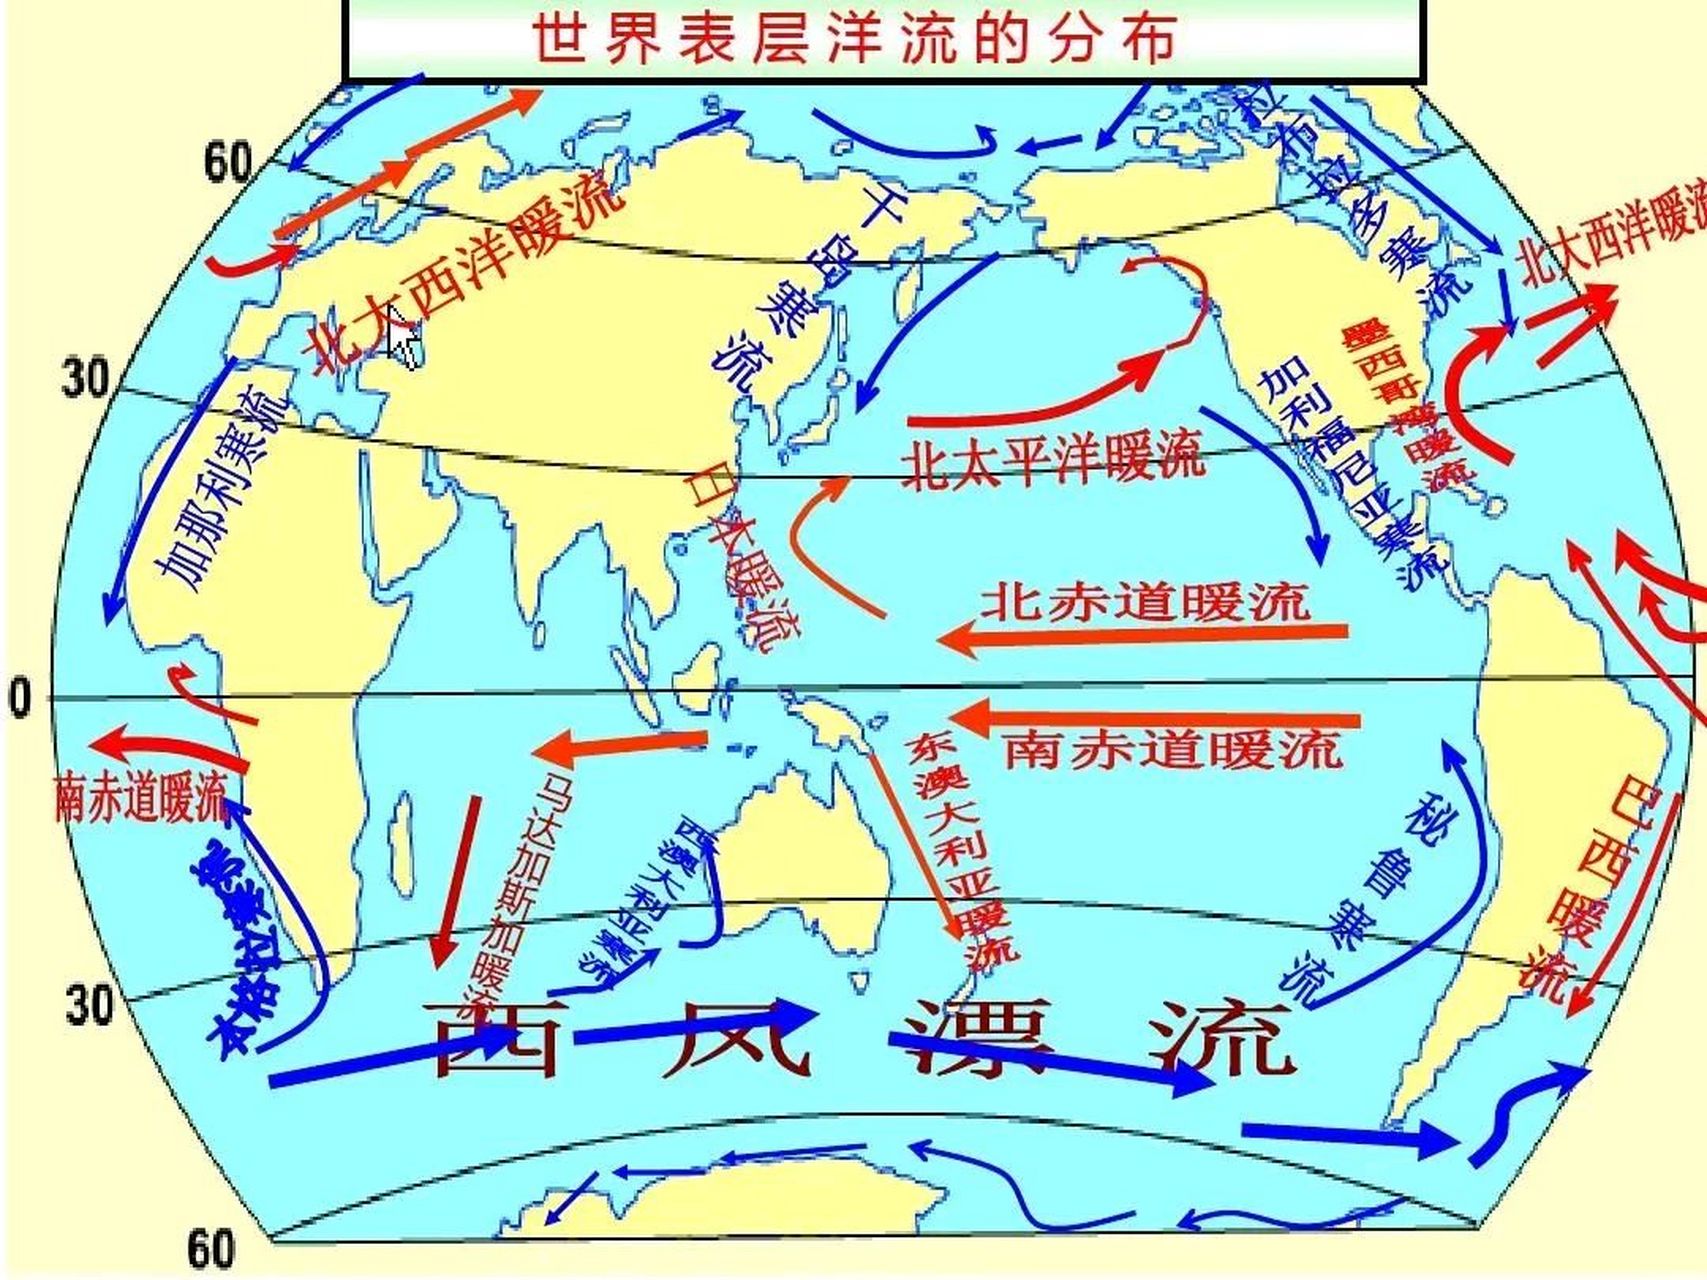 日本福岛往海里排核污水,影响最大的首先应该是北美洲的西部海域,因为